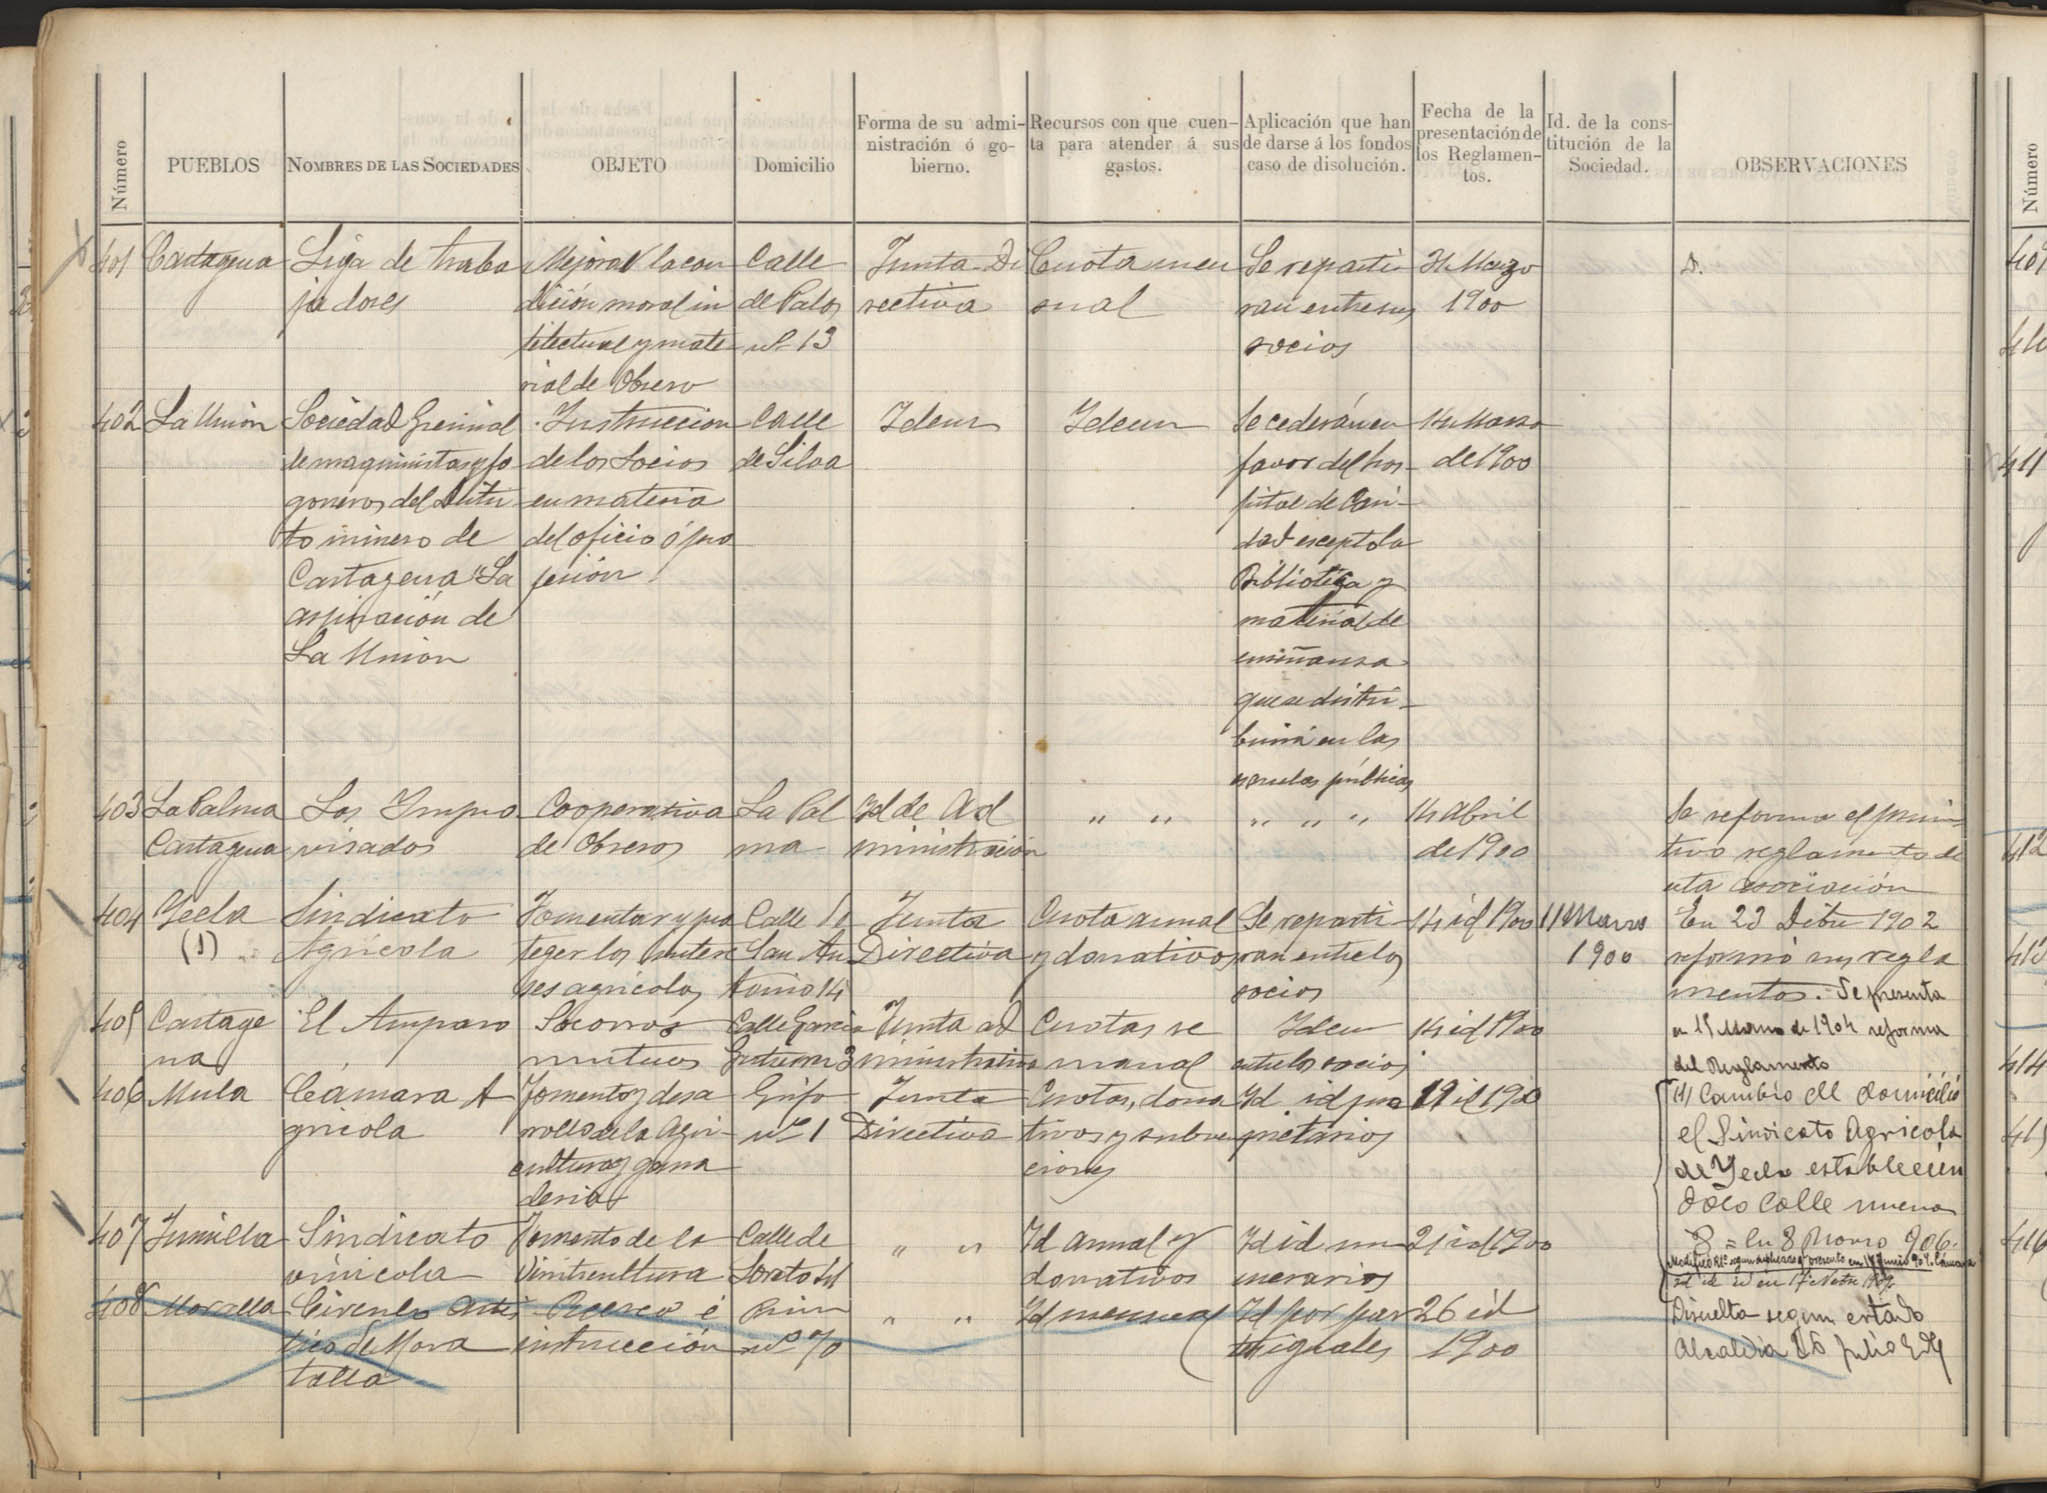 Registro de Asociaciones: nº 401-450. Años 1900-1901.